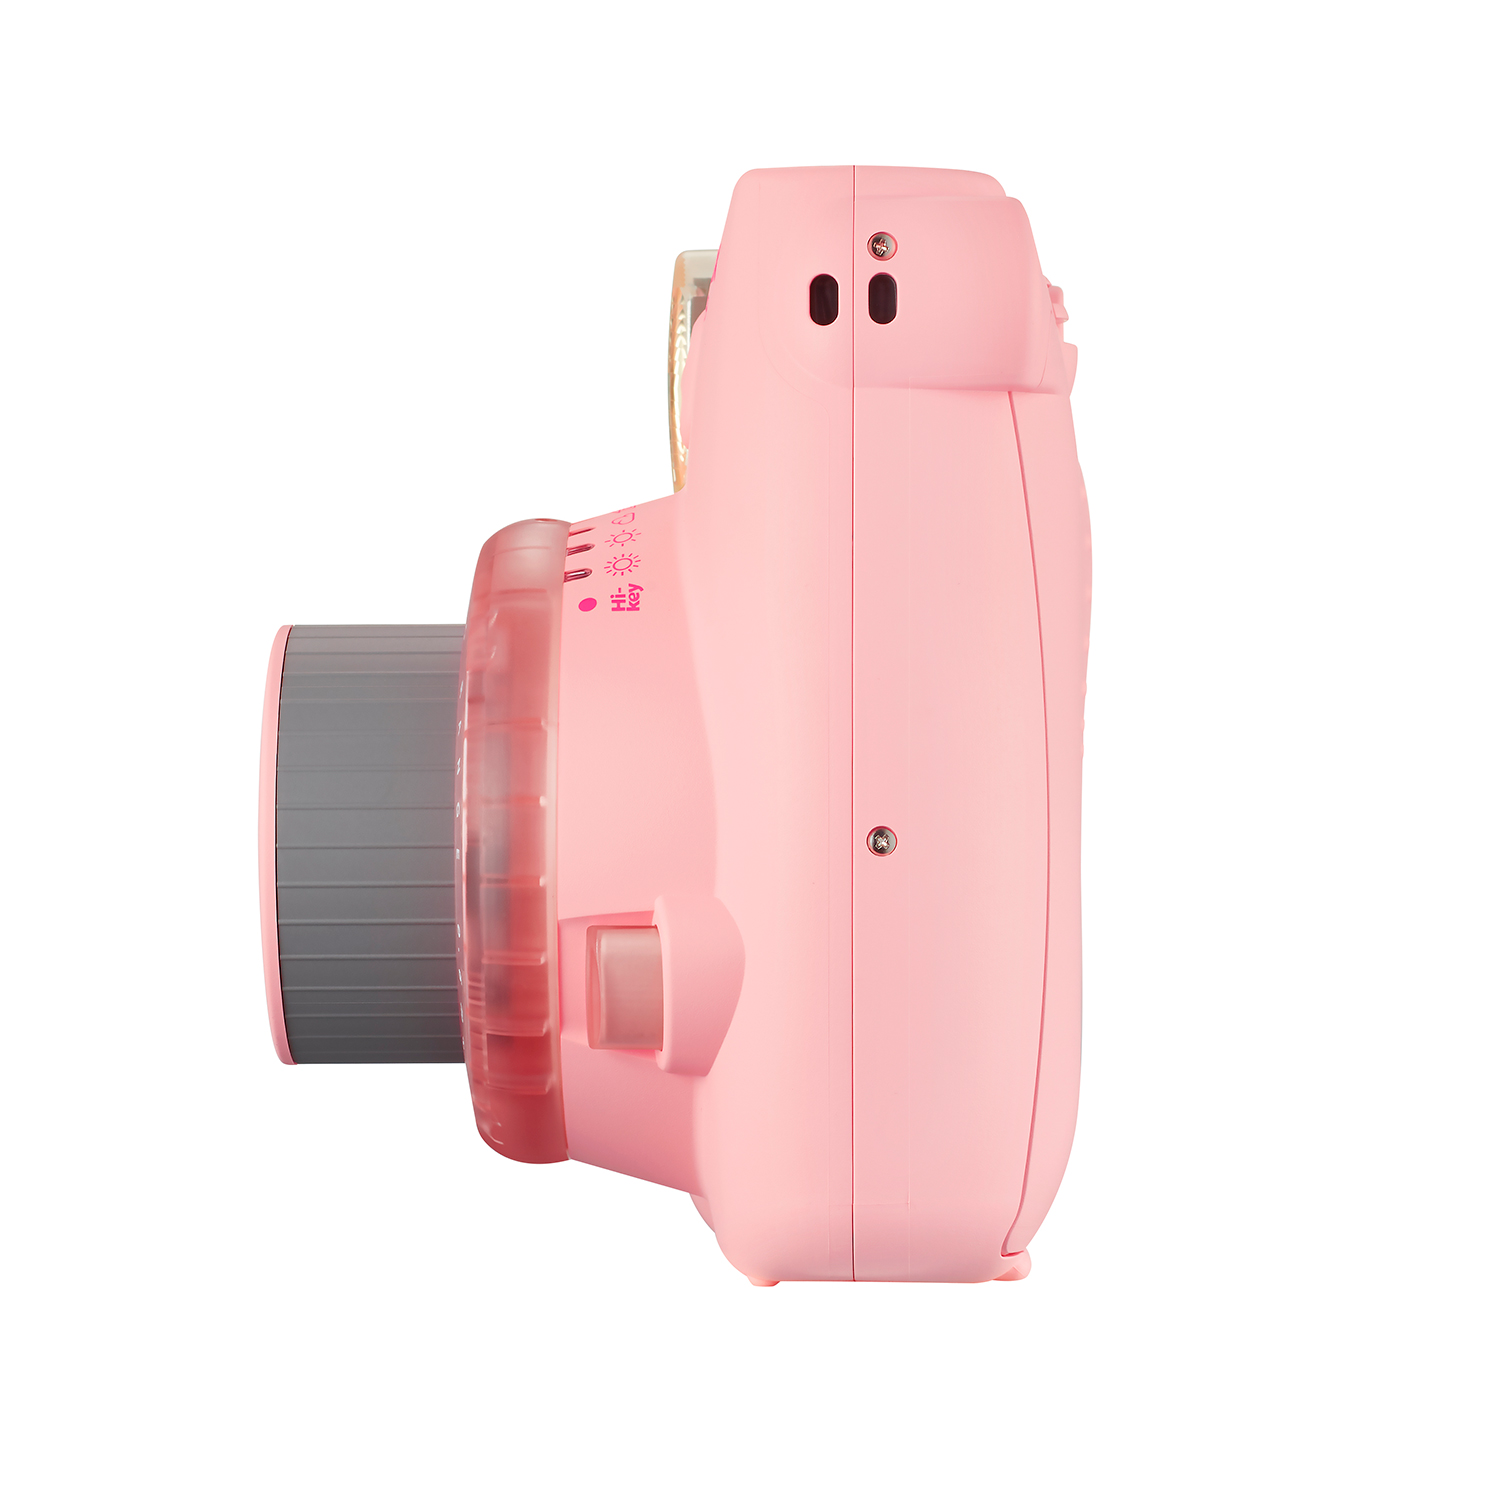 دوربین عکاسی چاپ سریع فوجی فیلم مدل Instax Mini 9 Clear به همراه فیلم مخصوص دوربین فوجی فیلم اینستکس مینی مدل Instax Mini Stained Glass